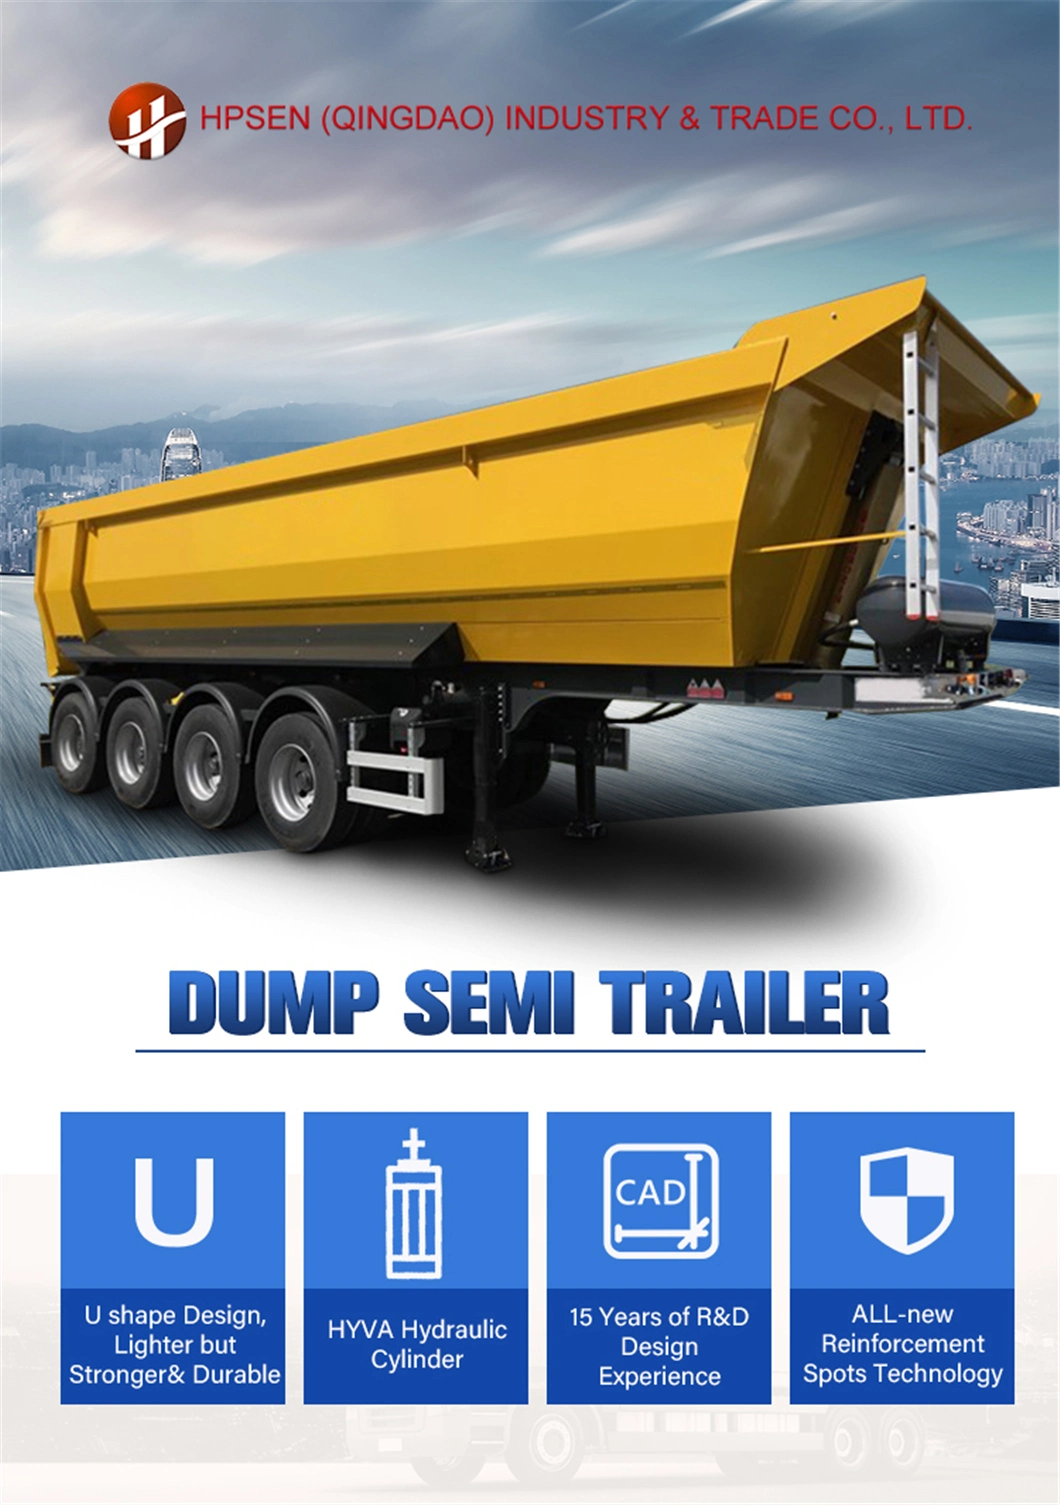 Heavy Duty Rear Dump Dumping Sand Box Semi Trailer Parts Hydraulic Cylinder